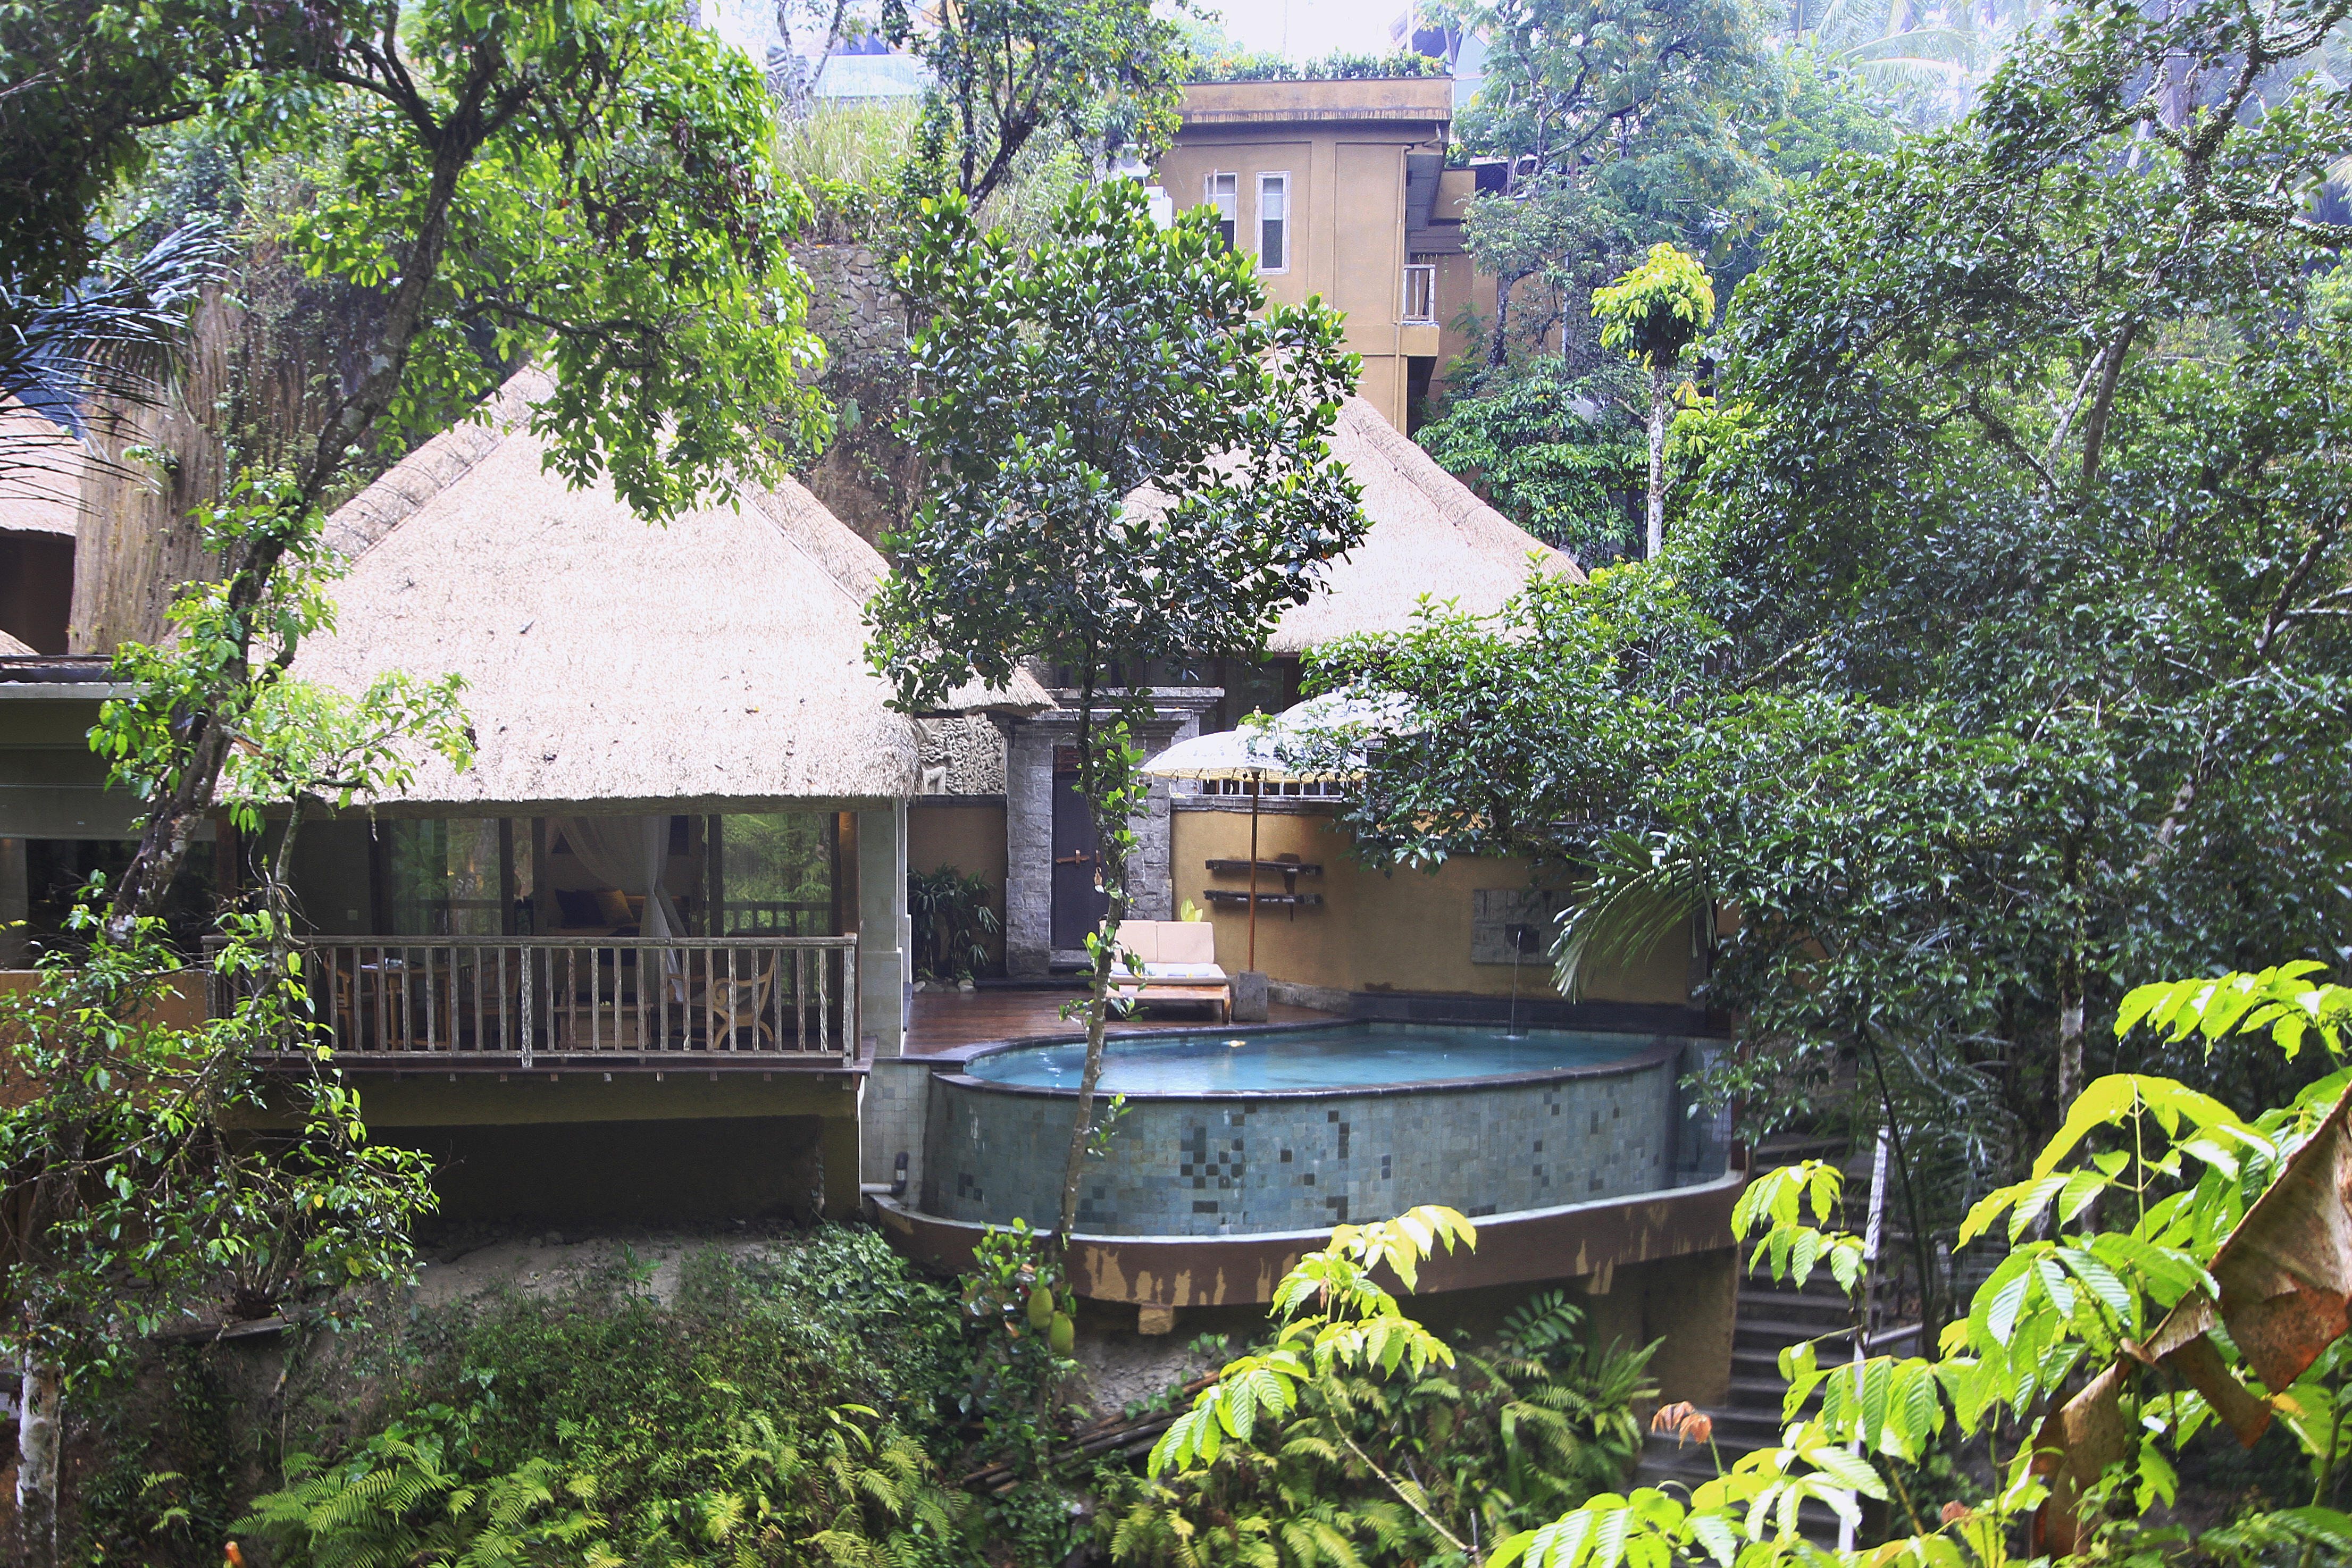 The Kayon Ubud Resort